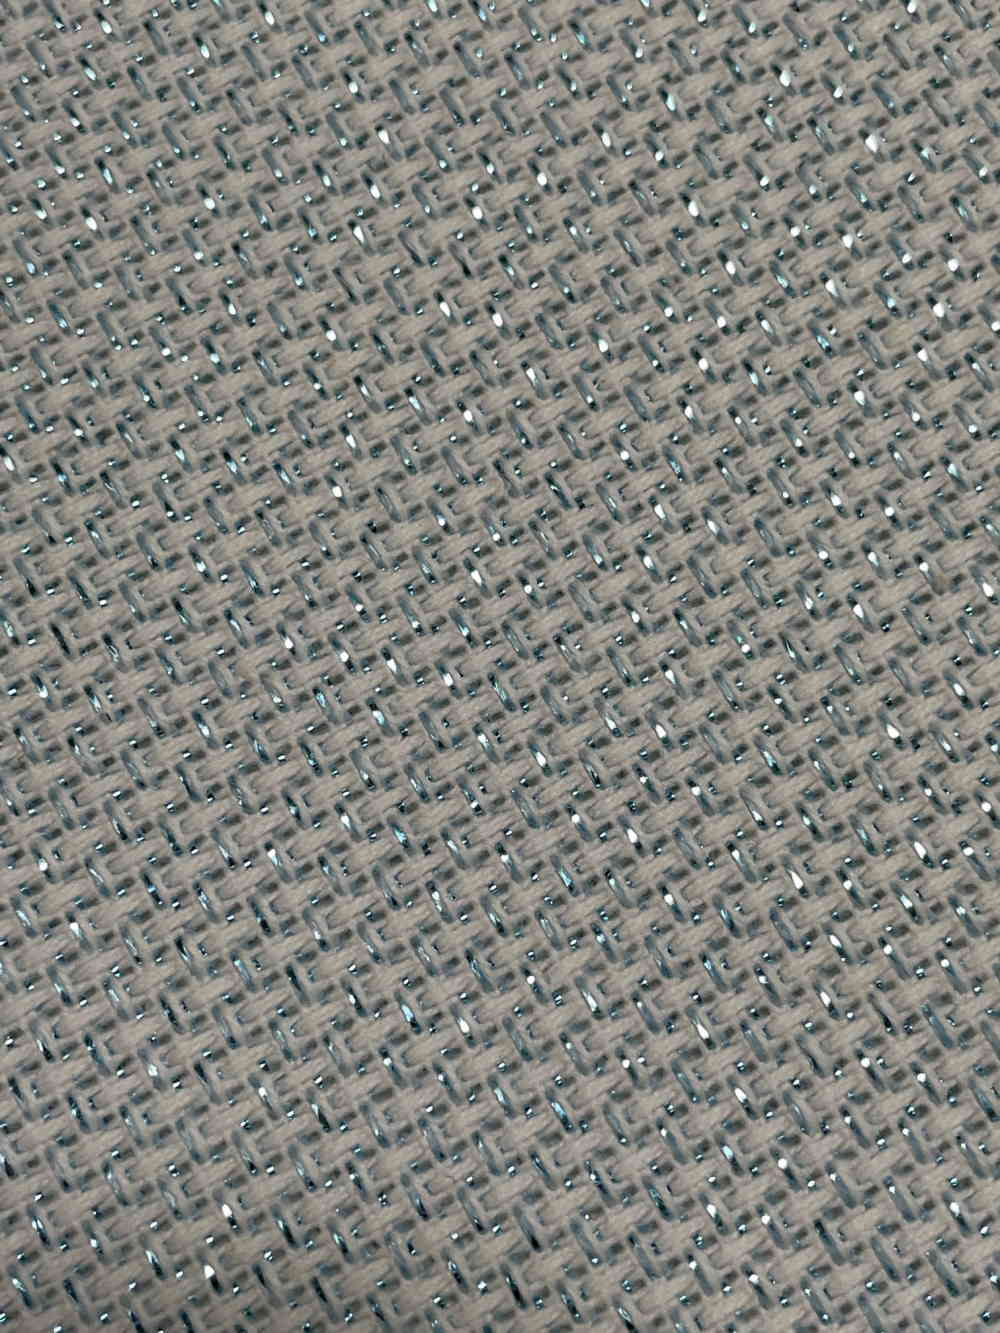 商 品 詳 細 詳細 刺しゅう布にブルーラメ糸が織り込まれた美しく華やかな布です。クッションや小物制作などにお役立て下さい。ウェディング関係の図案にもお勧めです。1メーターからの販売です。（※例:個数3の場合は3Mの続き布でお送り致します） サイズ 約 150 x 100 cm カラー ブルーラメ × 水色生地 カウント数 14ct（1cm辺り5.5目） 生産国 韓国 注意 商品撮影時やPCのモニターの色の設定等により、実物の商品と多少色合いが異なる場合もございます。 刺しゅう ししゅう Kreuzstich クロスステッチ クロス・ステッチ くろすすてっち Embroidey デンマーク cross stitch 北欧 ハンドメイド Broderi ステッチクロス ステッチ キッド 手芸 手作り ショップ スティッチ クロス エンブロイダリー Point de croix ハンドクラフト &#49901;&#51088;&#49688; 十字&#32353; 図案 Punto croce 手芸用品 &#3611;&#3633;&#3585;&#3588;&#3619;&#3629;&#3626;&#3605;&#3636;&#3626; 手刺繍 Korsstygn 刺しゅう Broderie クロスステッチ手芸雑貨シーボンヌ 専門店 通販 販売 サイト Вышивка крестом ギフト プレゼント